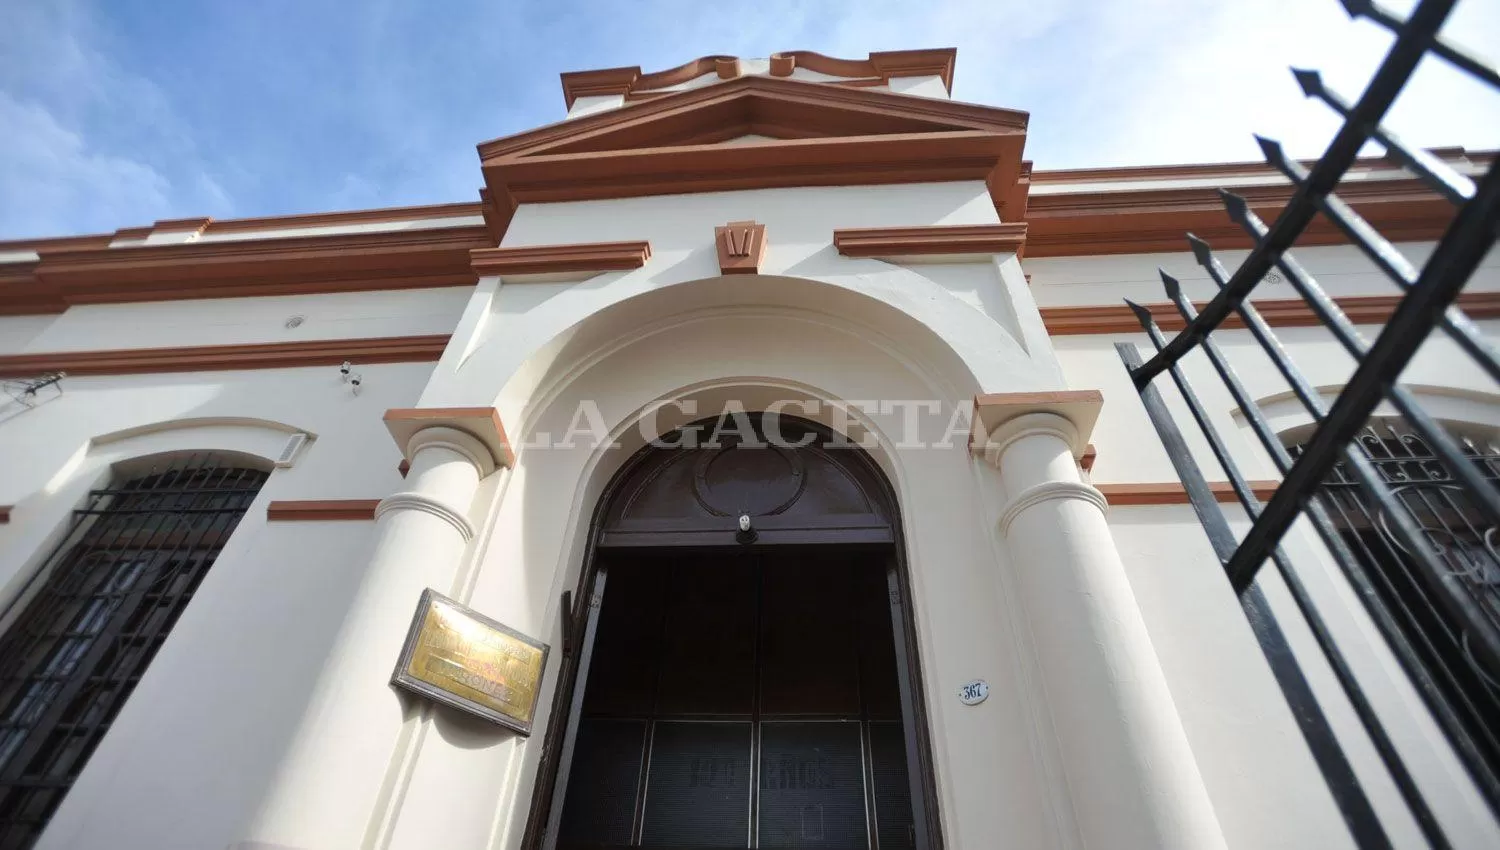 La comunidad del Colegio León XIII protestará hoy contra el cierre del secundario